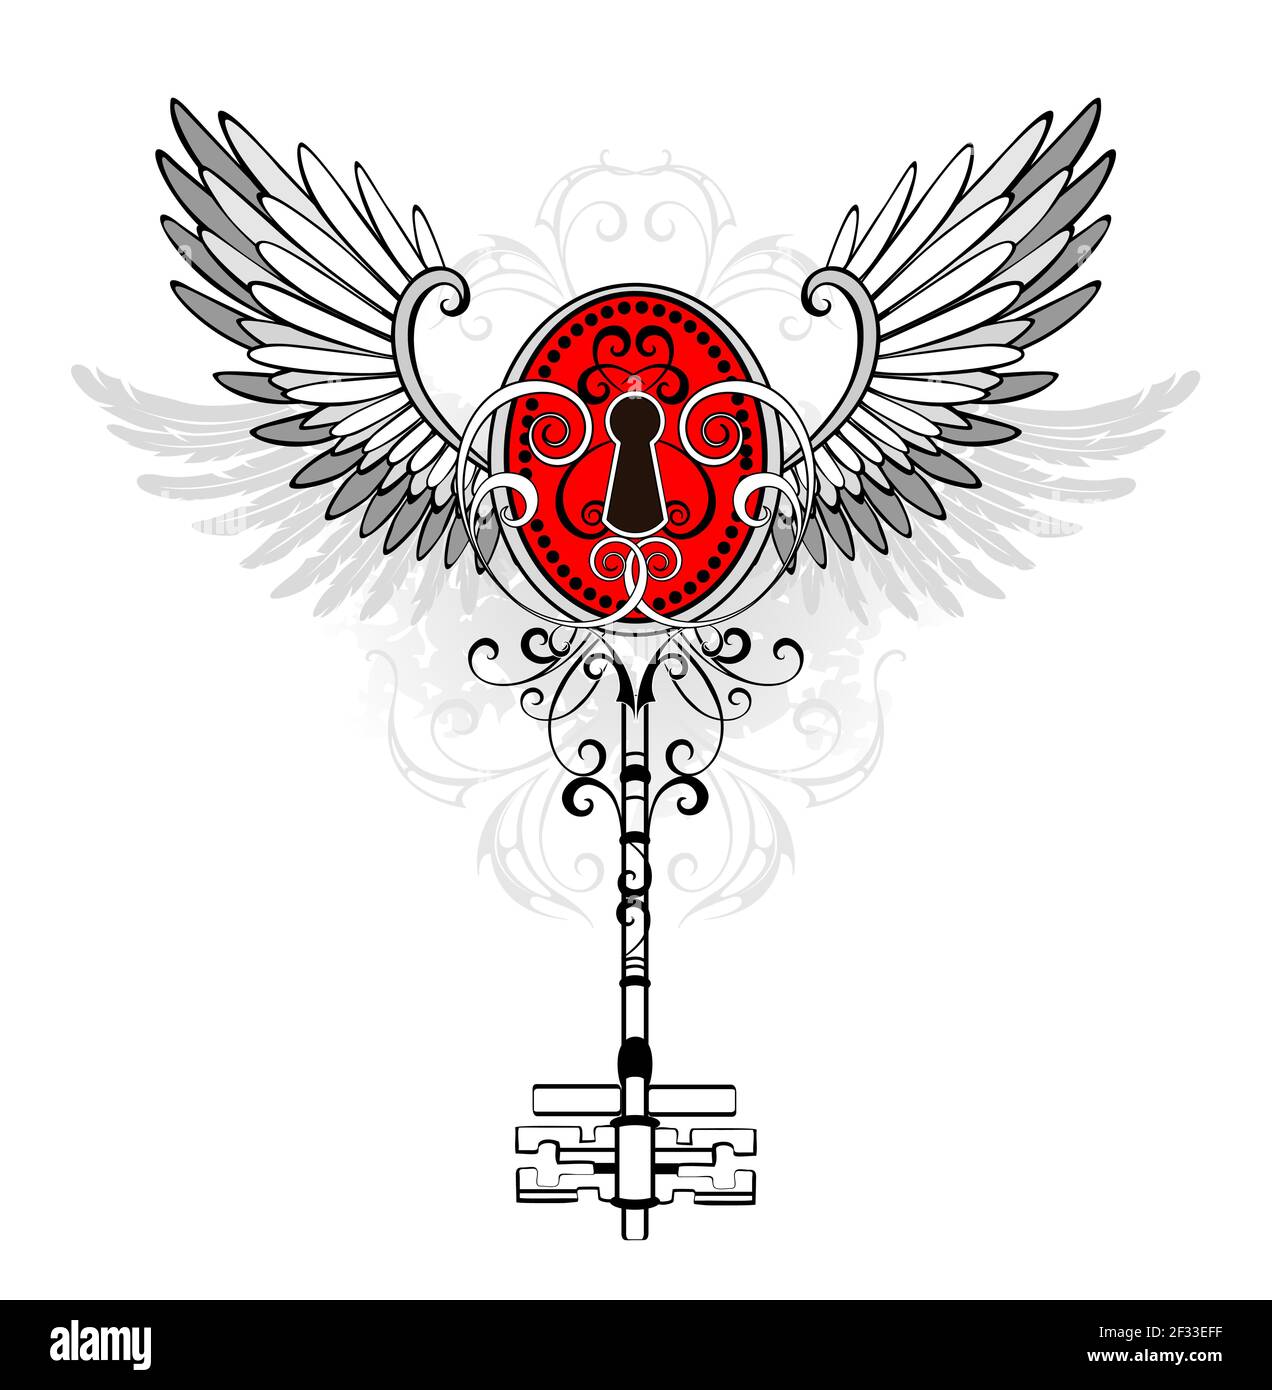 Clé ancienne à motifs et contour avec ouverture rouge, ornée d'ailes grises sur fond blanc. Style steampunk. Illustration de Vecteur